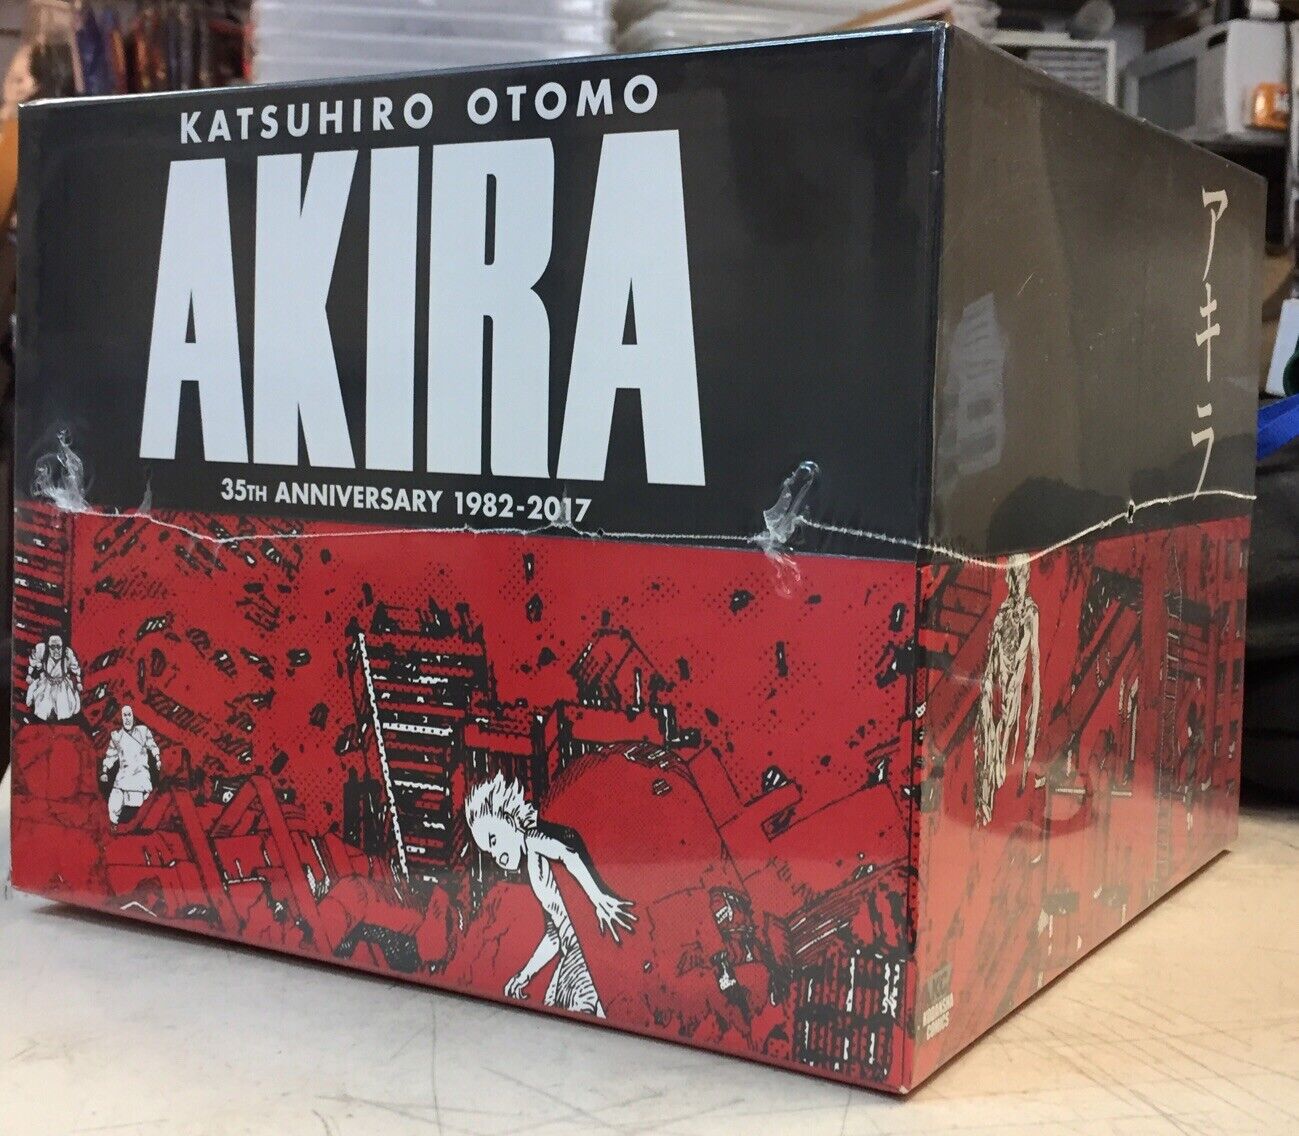 AKIRA 35th Anniversary Official Manga Box Set